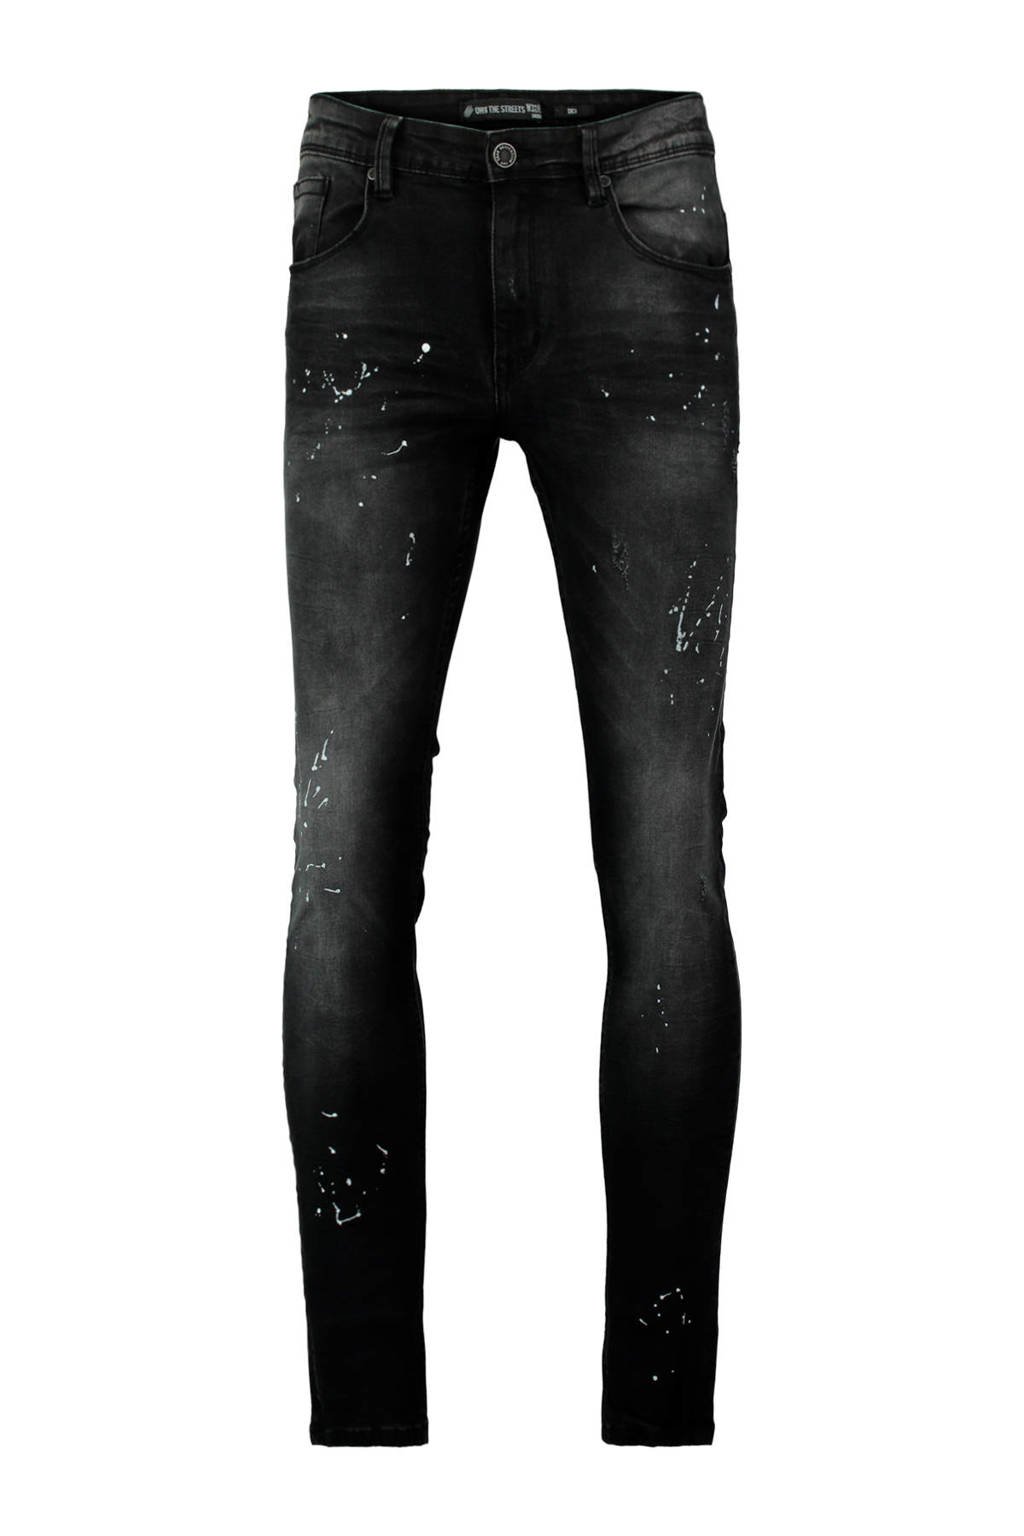 komen Vroeg Kietelen CoolCat skinny jeans zwart | wehkamp